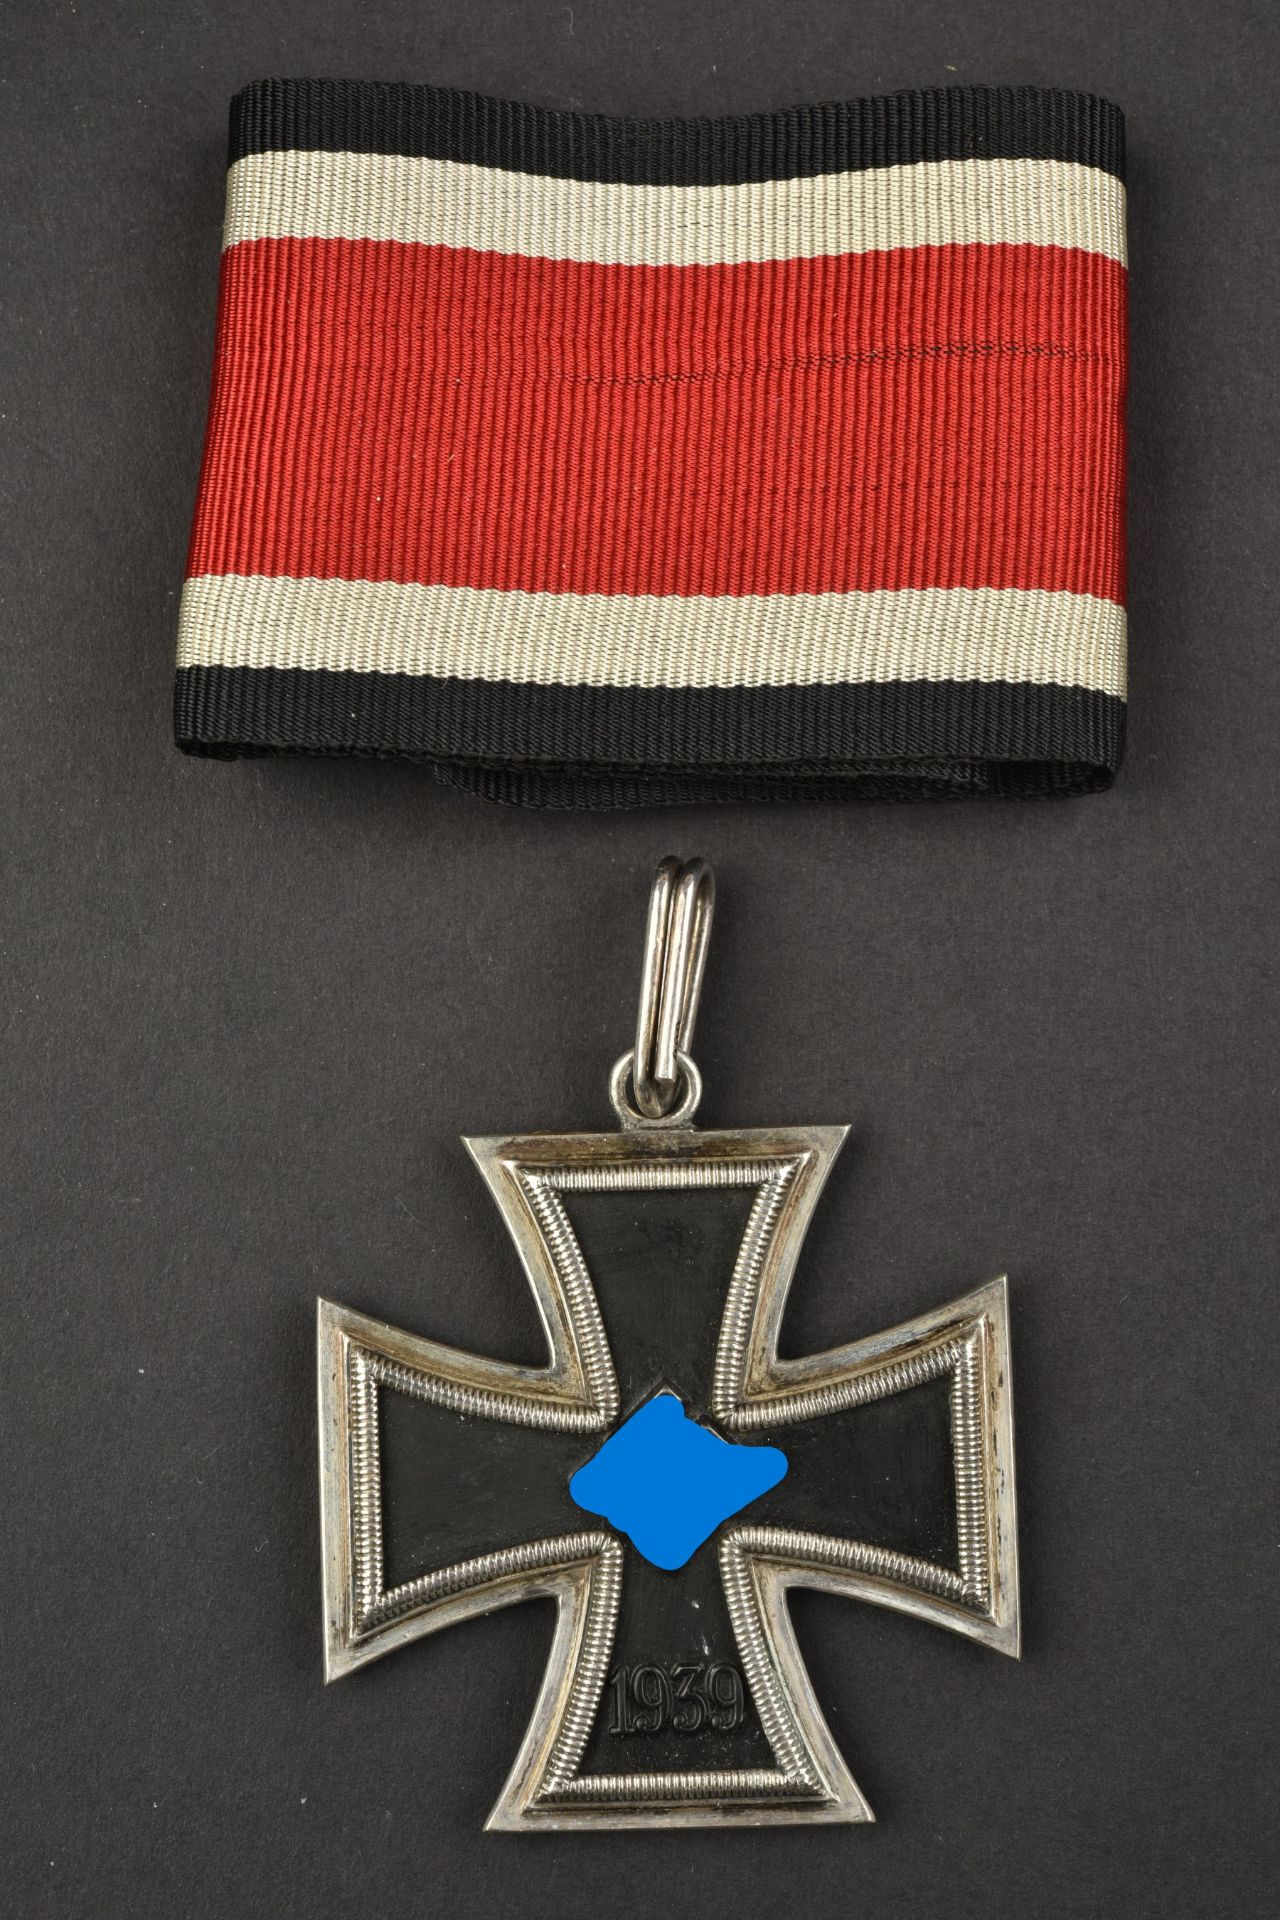 Reproduction de Croix de Chevalier. Reproduction of a Knight s Cross. - Bild 8 aus 15